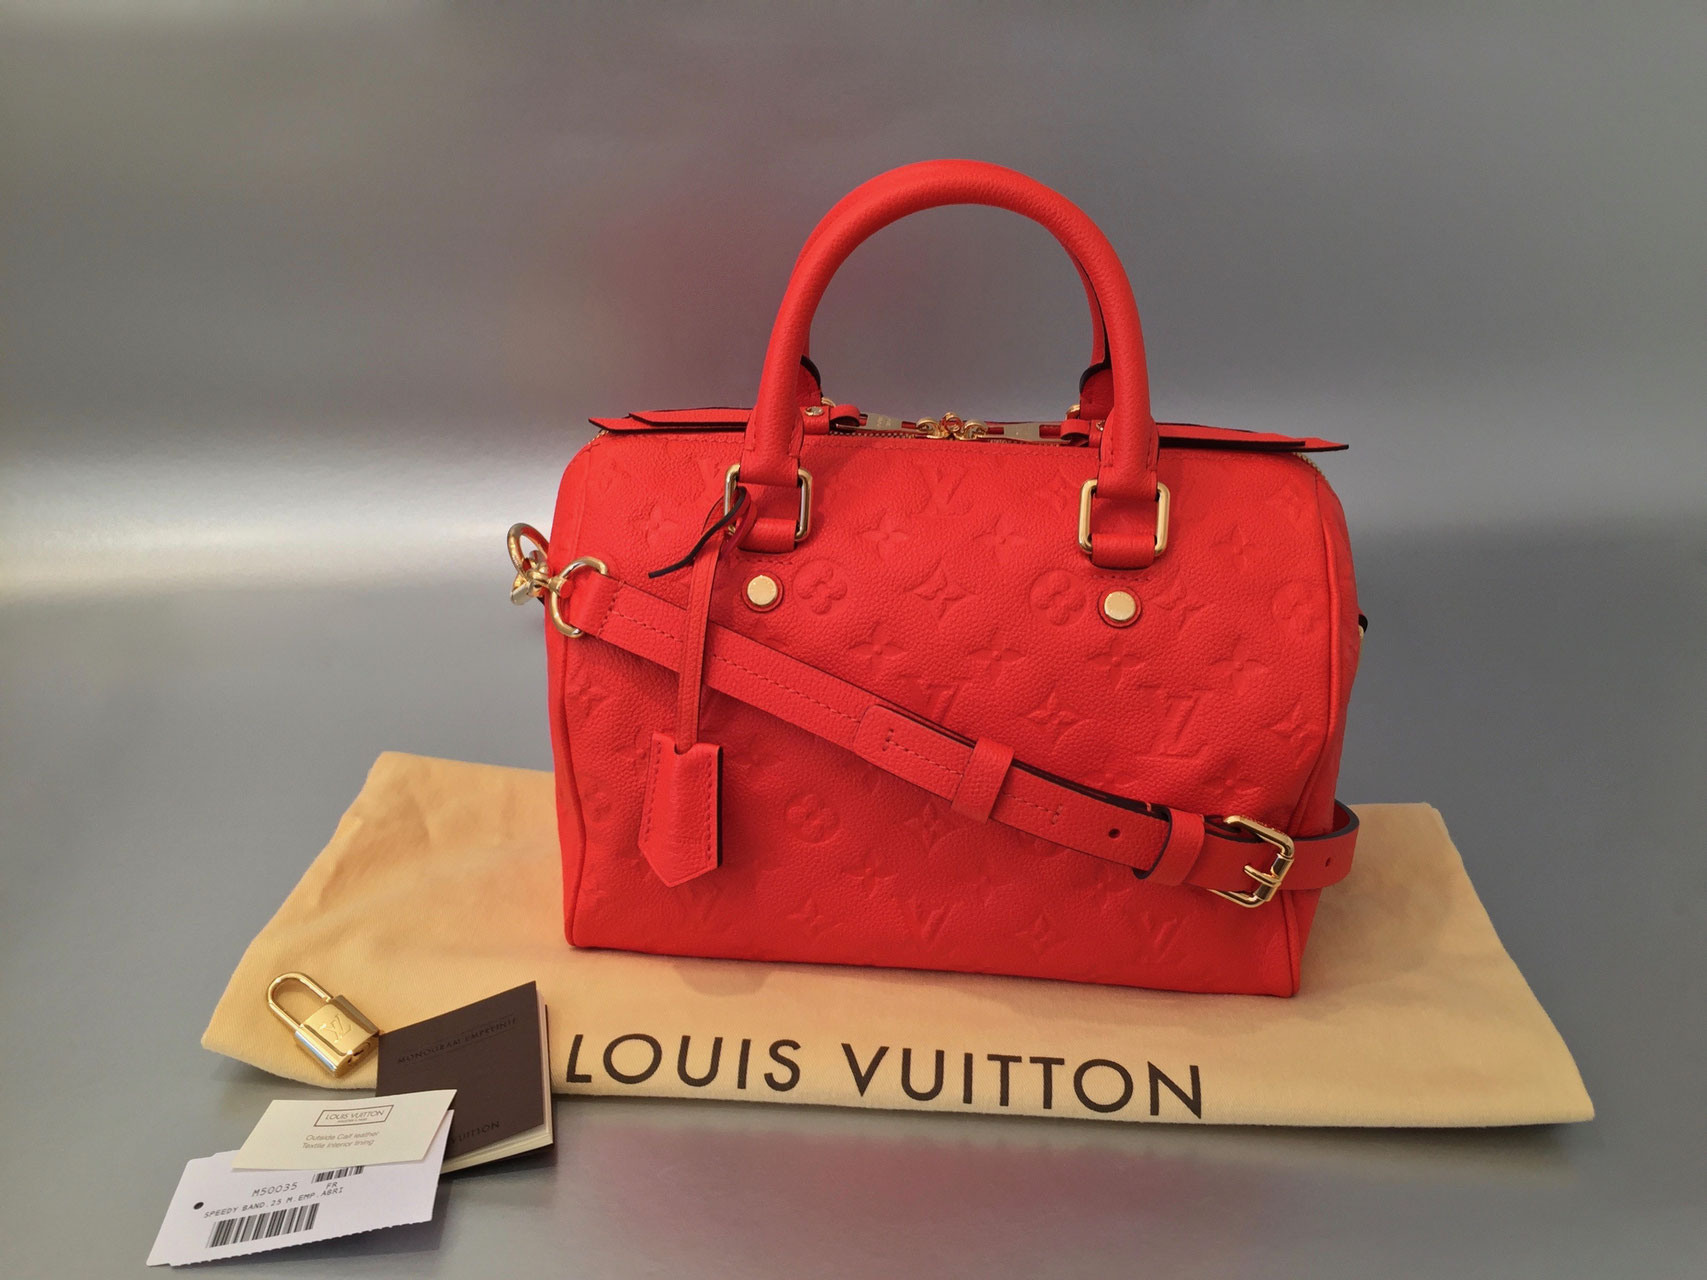 Louis Vuitton Monogram Empreinte Speedy Bandouliere 25 in Abricot - Ankauf & Verkauf Second Hand ...